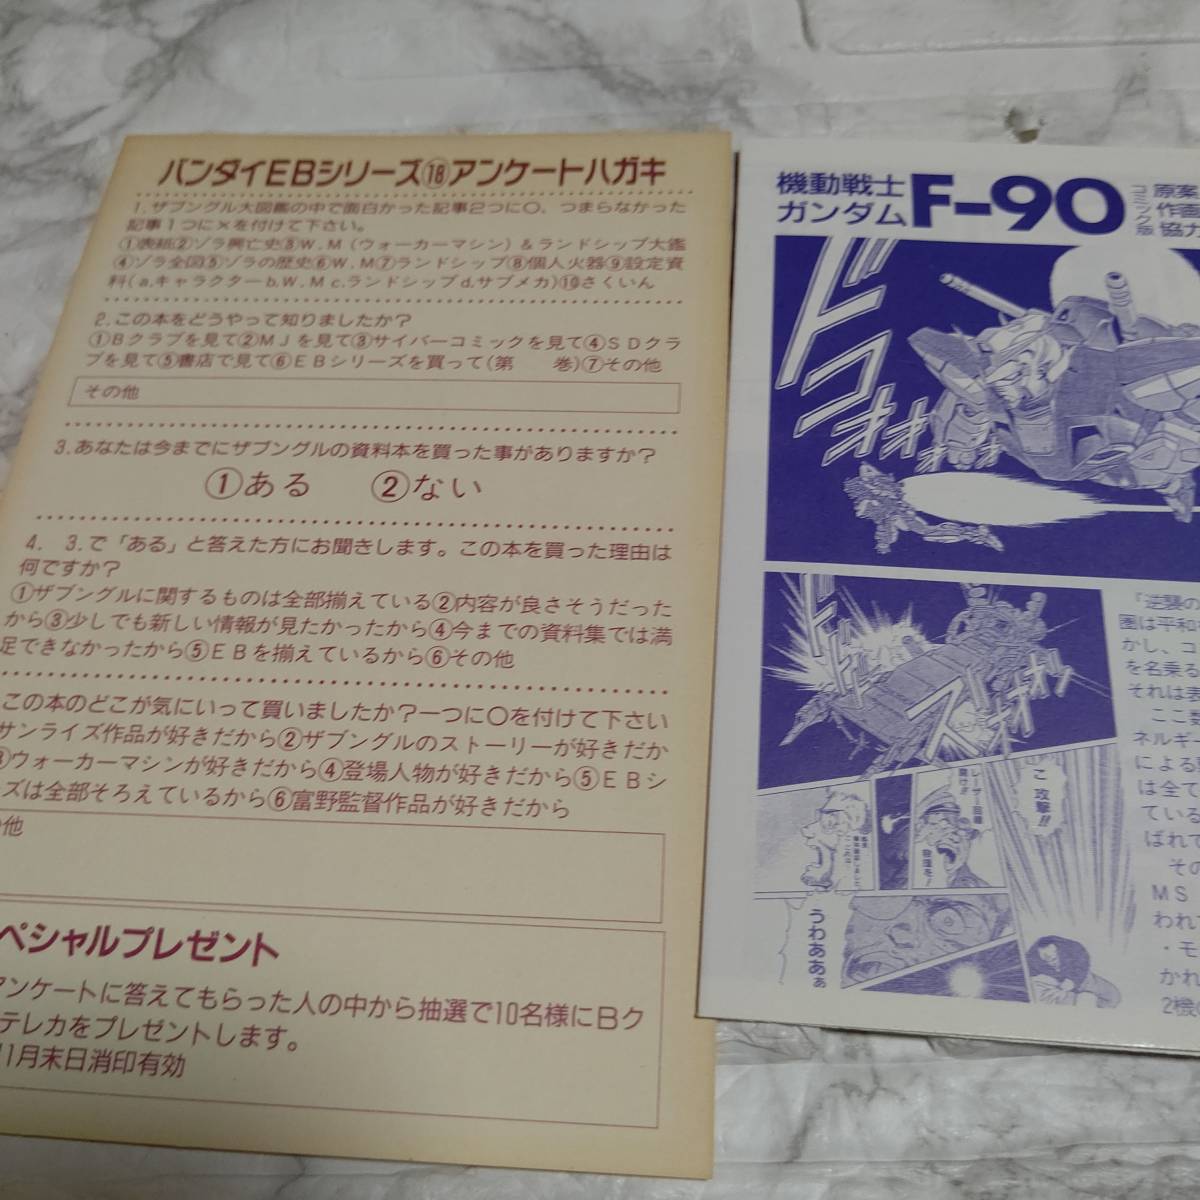  первая версия Blue Gale Xabungle большой иллюстрированная книга аниме Mucc 1990/10/01 первая версия 144 страница specification выпускать фирма Bandai 